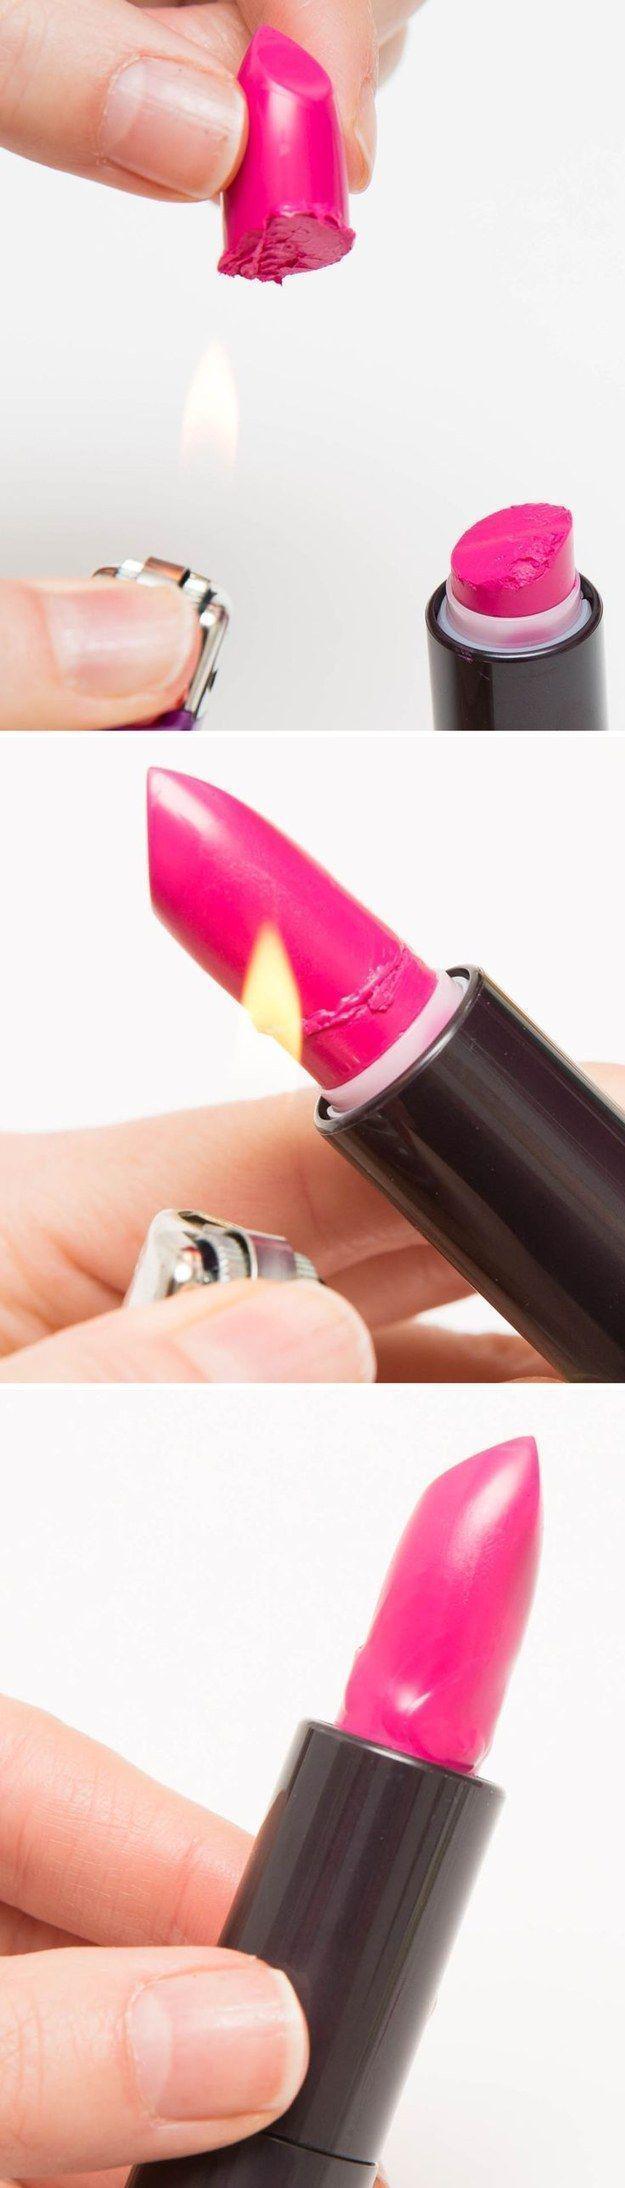 รูปภาพ:https://makeuptutorials.com/wp-content/uploads/2015/10/Re-attach-broken-lipstick-llife-changing-makeup-hacks.jpg